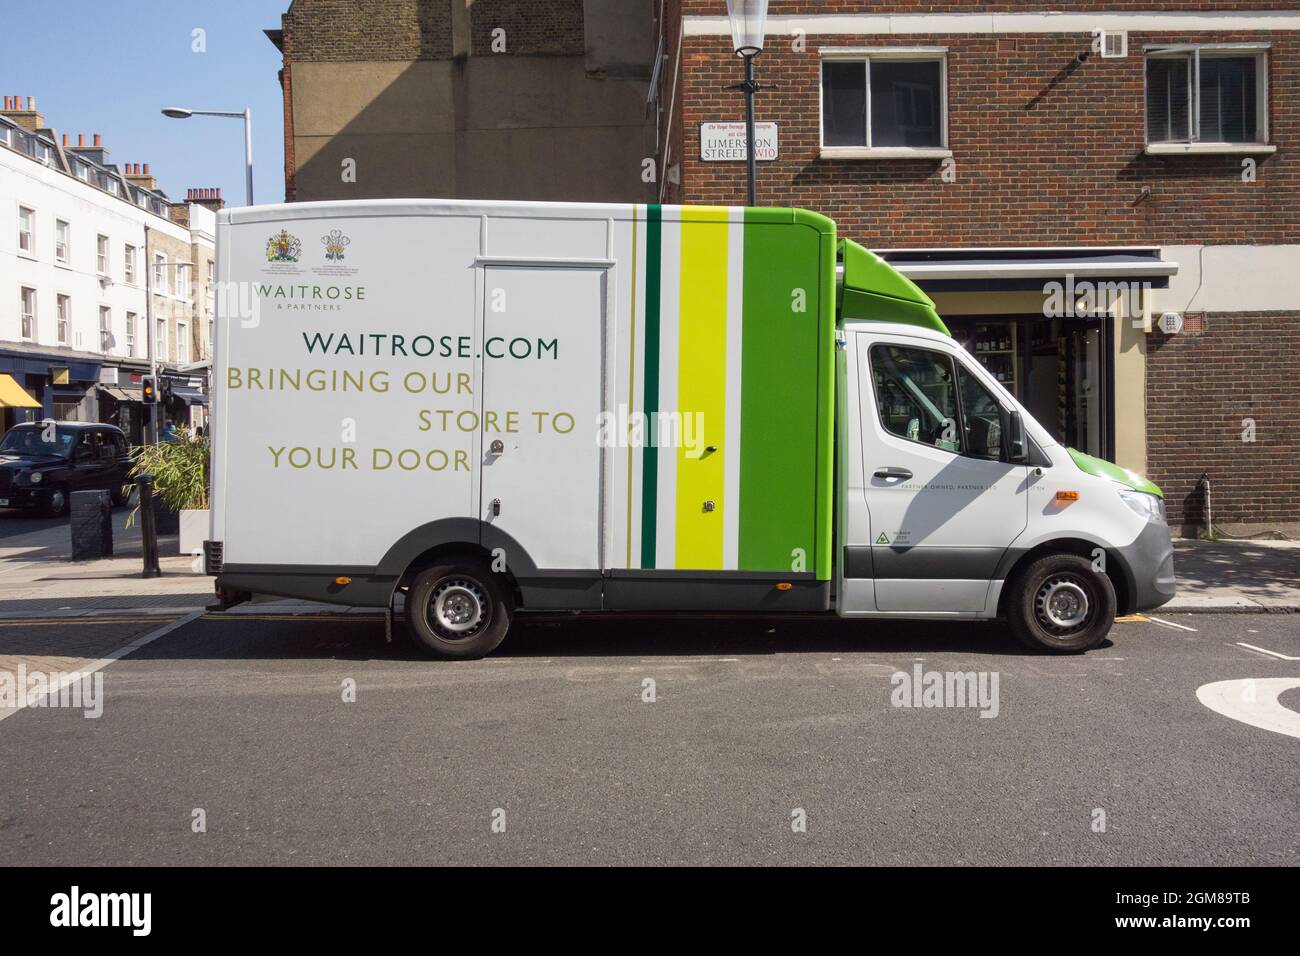 Une camionnette de livraison Waitrose garée dans une rue à Chelsea, Londres, Angleterre, Royaume-Uni Banque D'Images